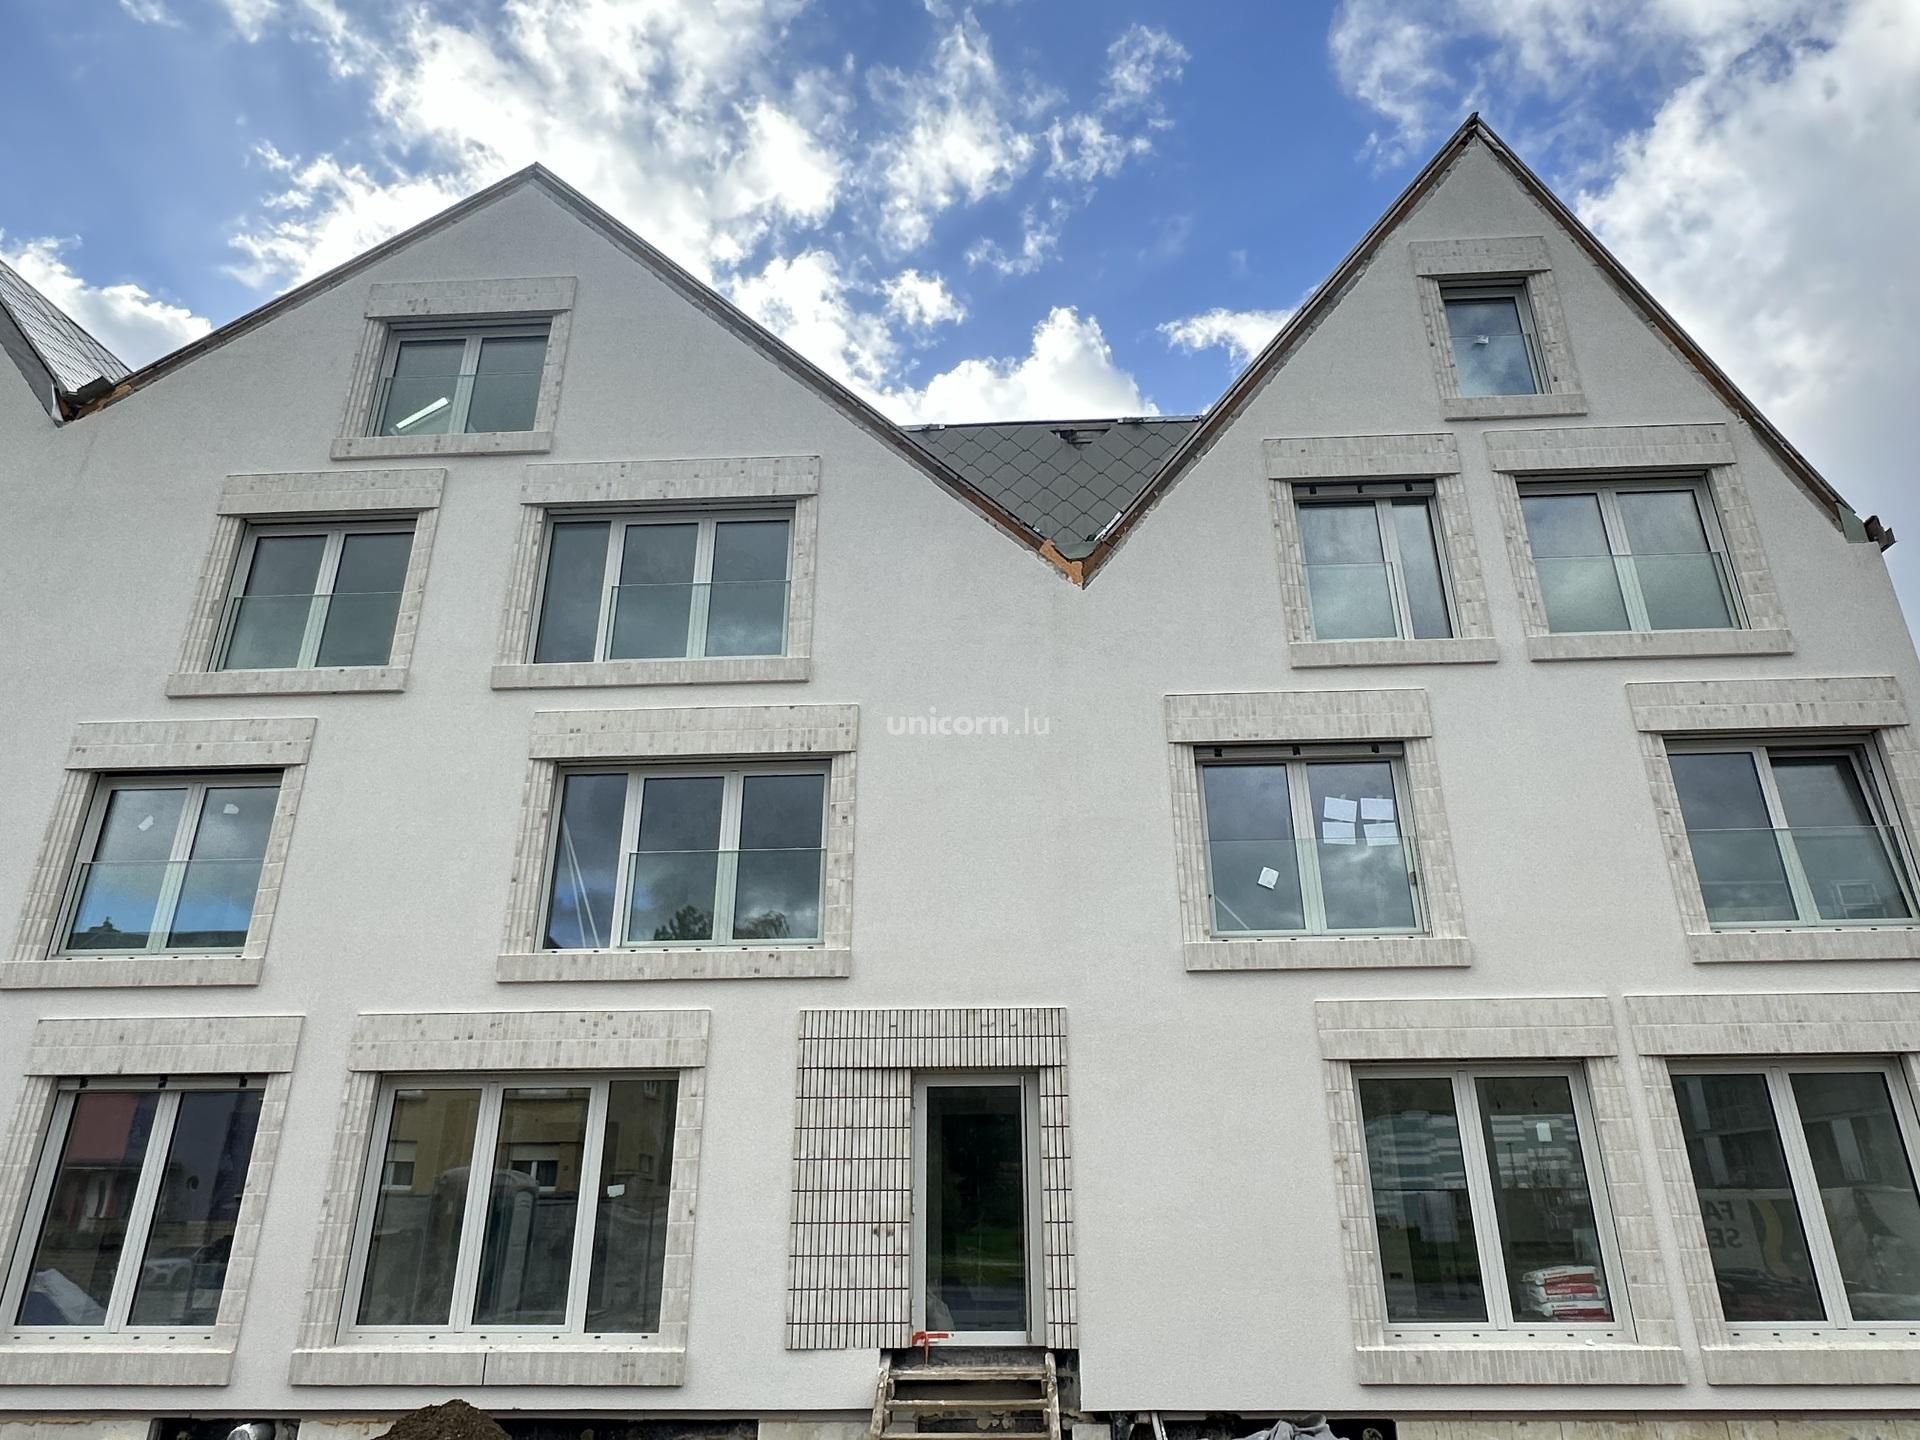 单元房 for sale in Walferdange  - 165.81m²